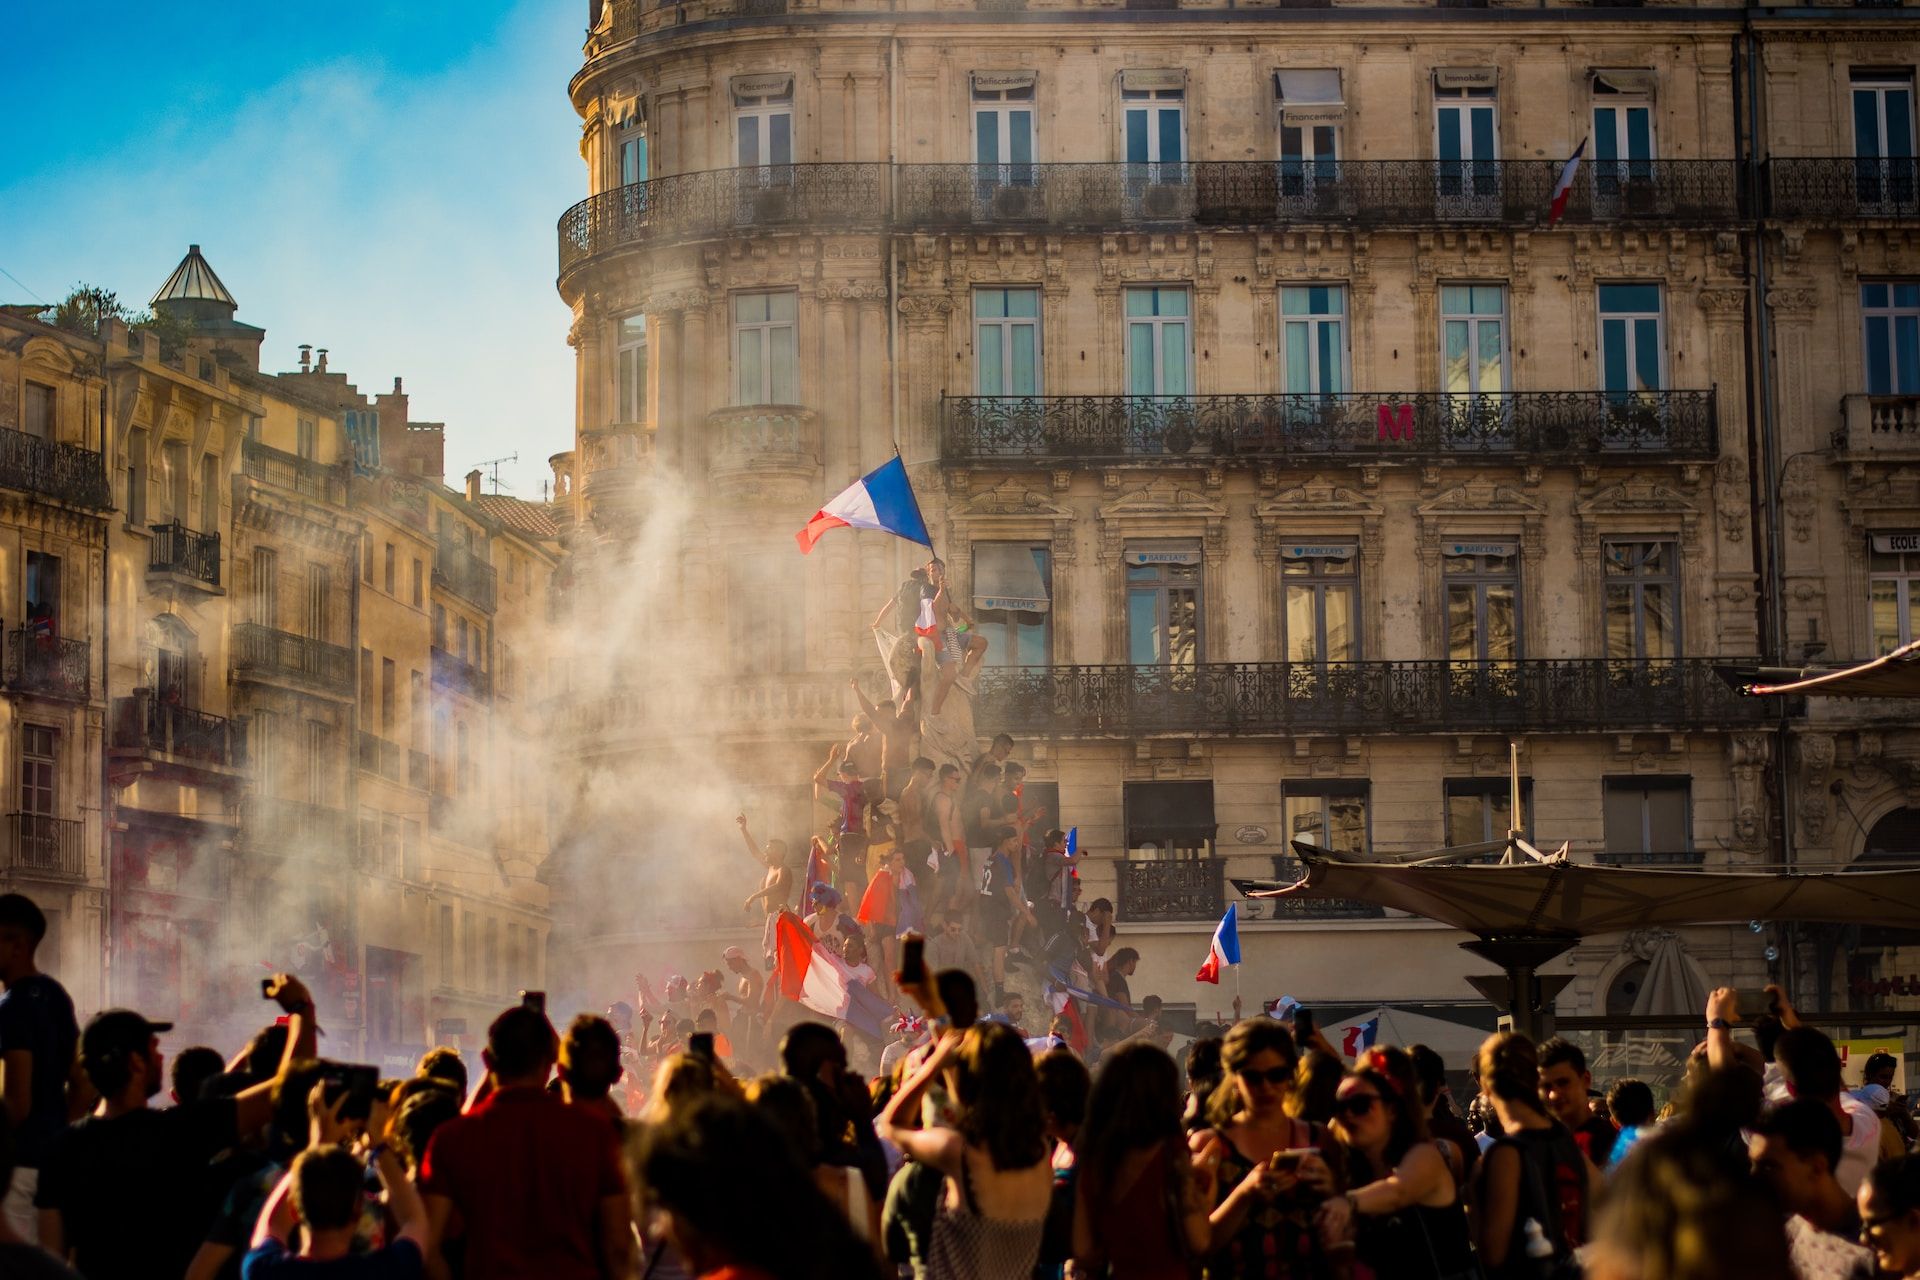 Une manifestation en France avec une foule grimpant sur une statue avec un drapeau - Photo de Pierre Herman sur https://unsplash.com/fr/photos/Fw_2kaQZc90